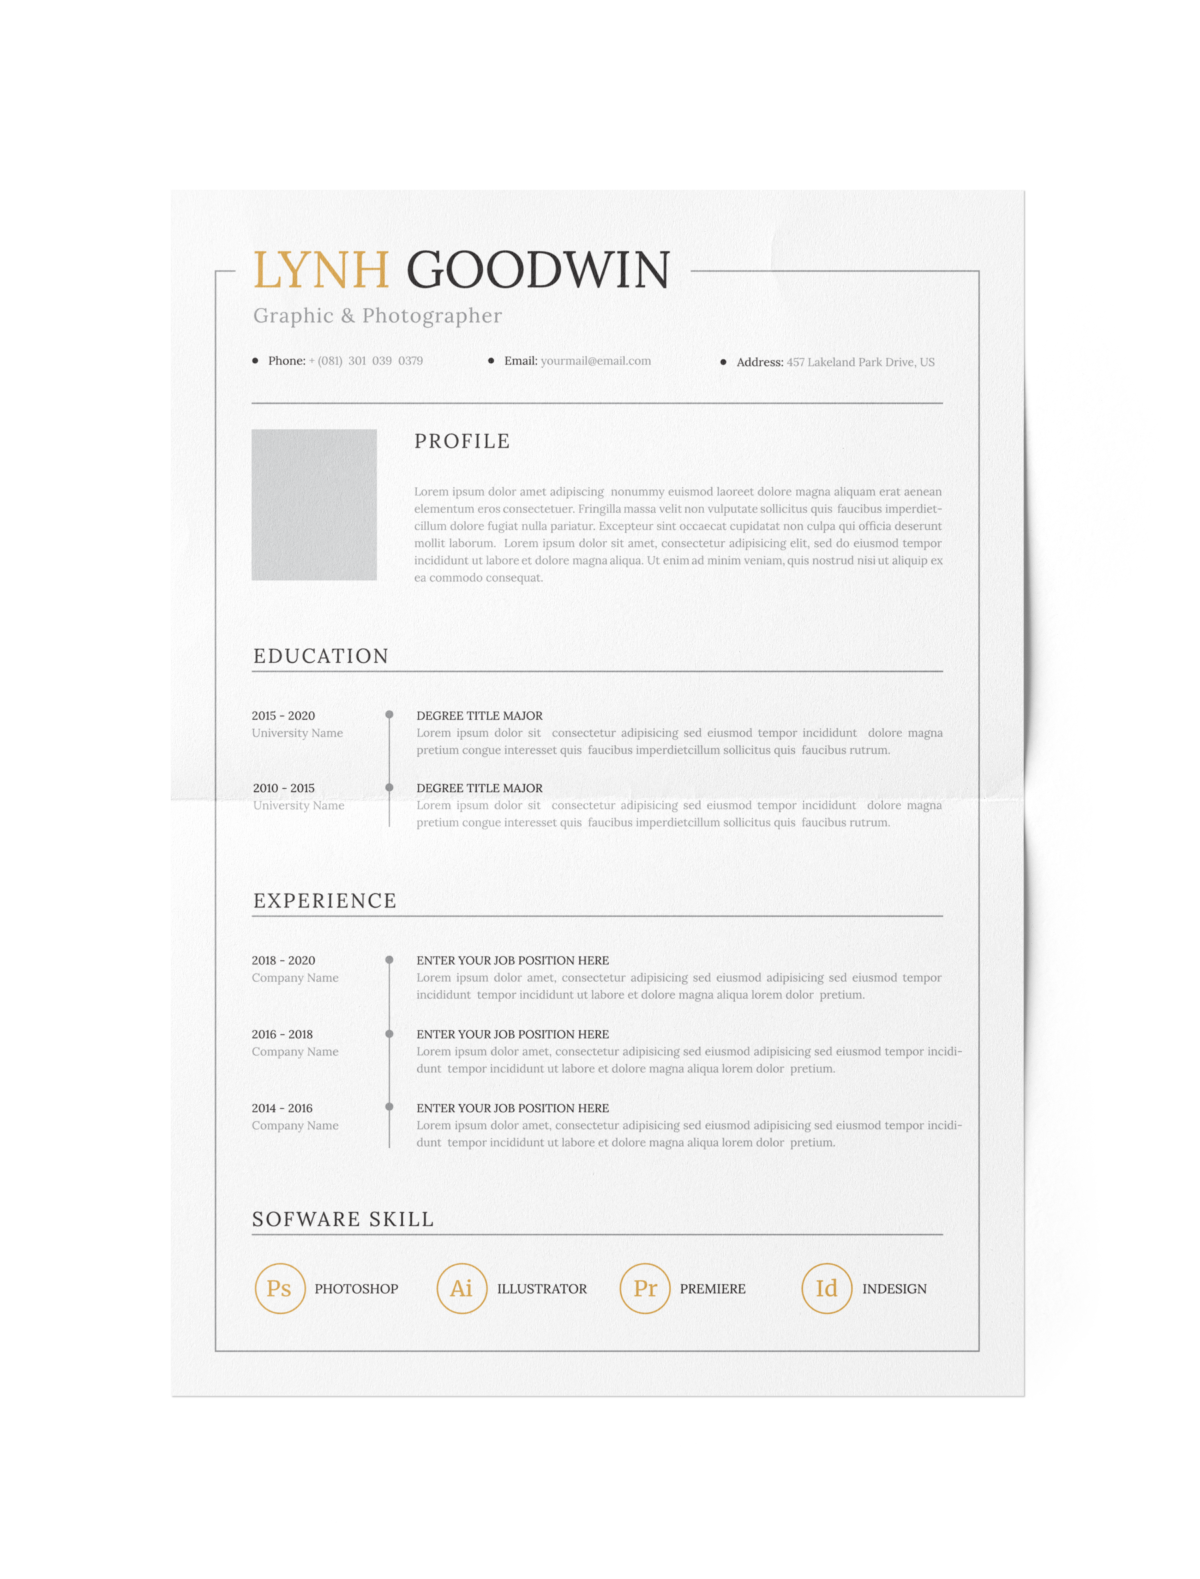 CV #59 Lynh Goodwin